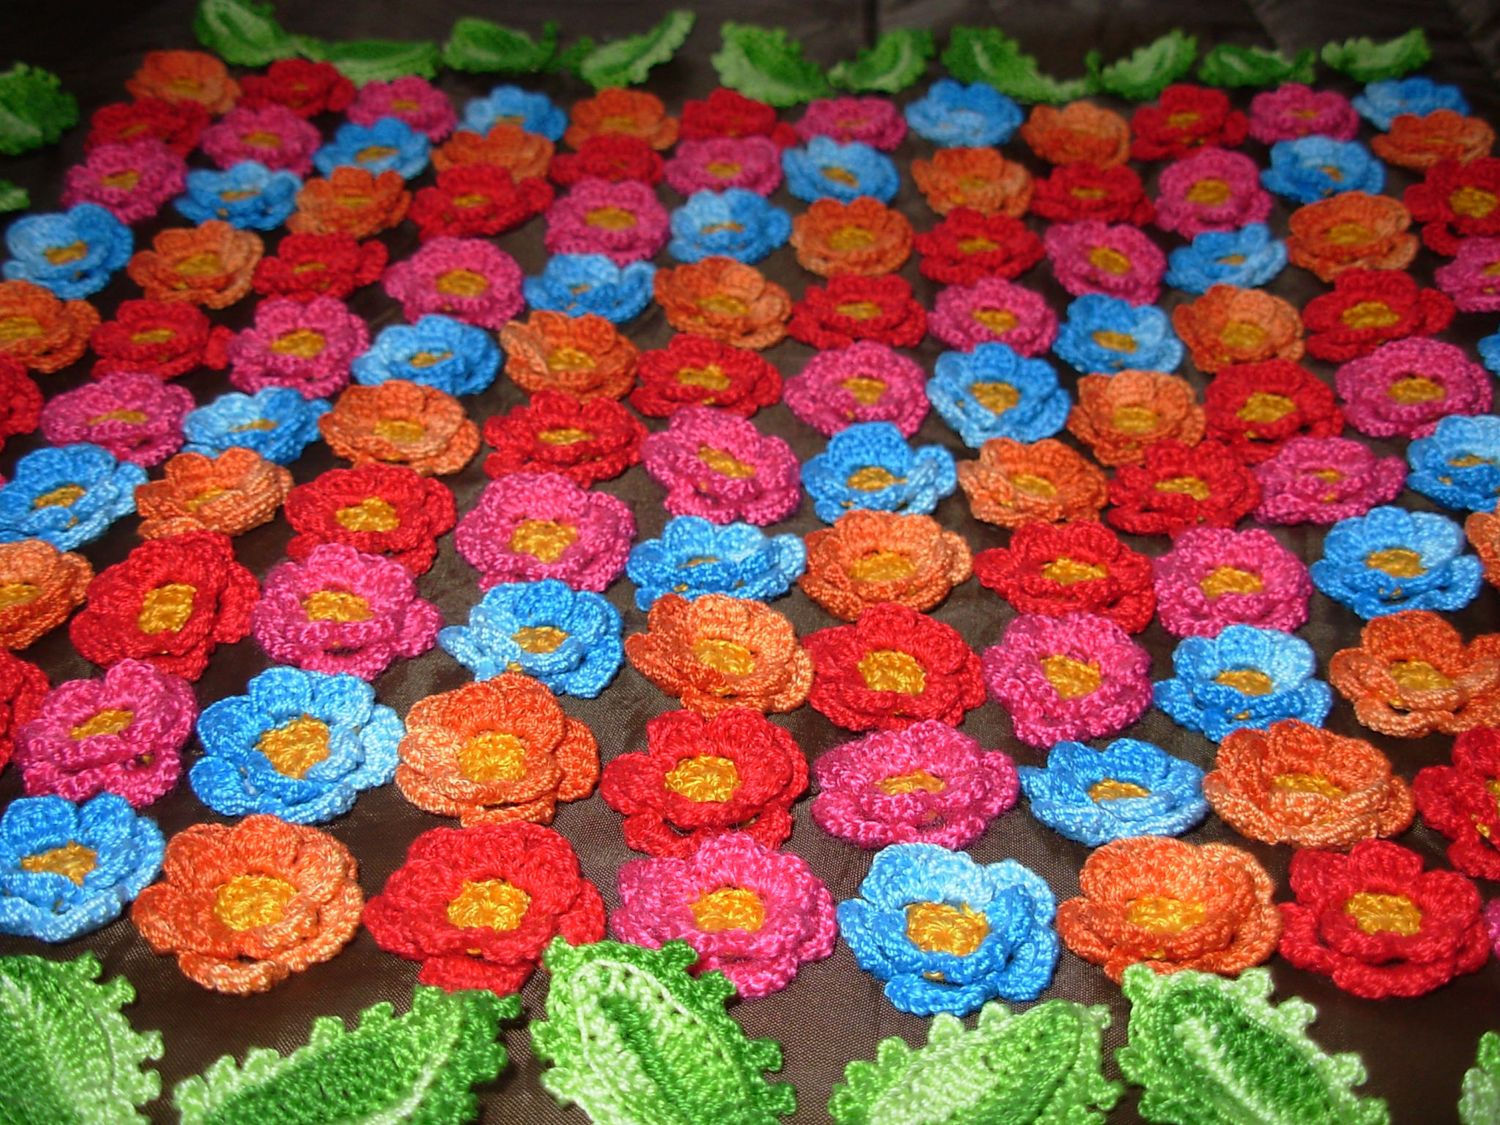 Crochet Flowers: Ideas for using crochet flowers in projects